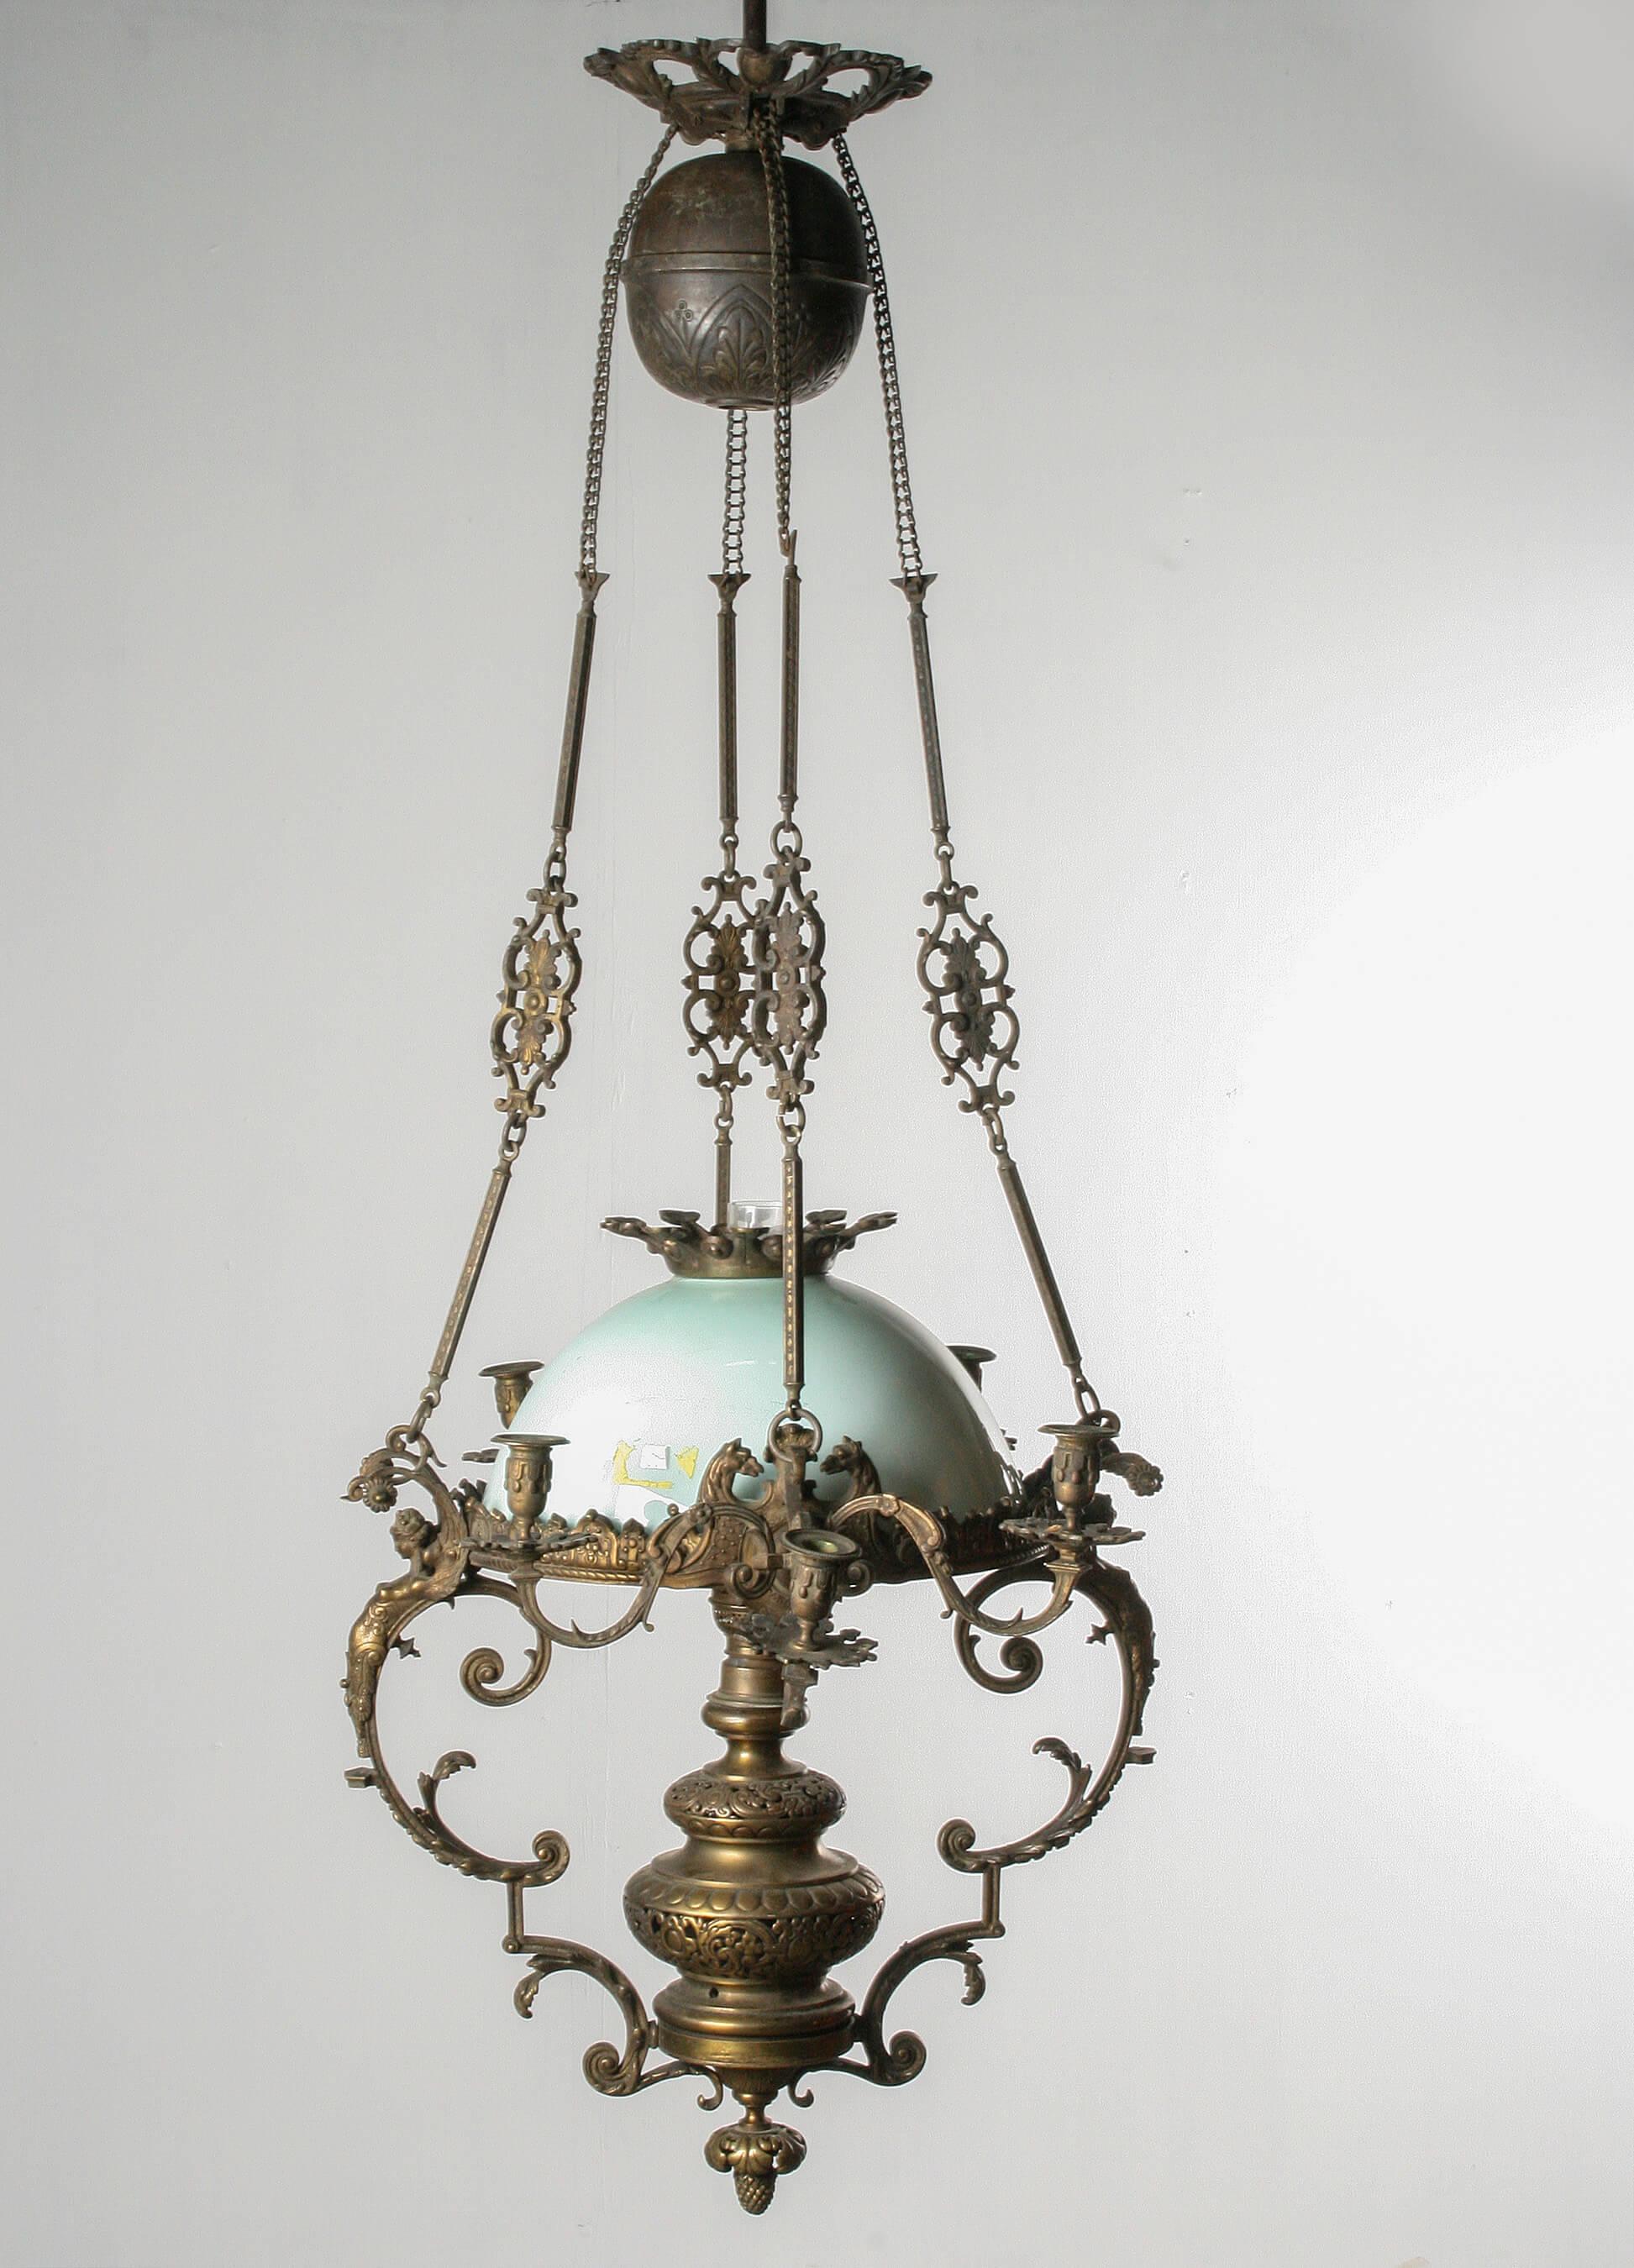 Lampe à huile de style Renaissance du 19e siècle. Conçu. J'ai deux chandeliers, chacun avec 3 bougies. Au centre, l'unité de lampe à huile. Avec un abat-jour en verre vert et une couronne en bronze. Le cadre est en bronze moulé. Décoré de femmes